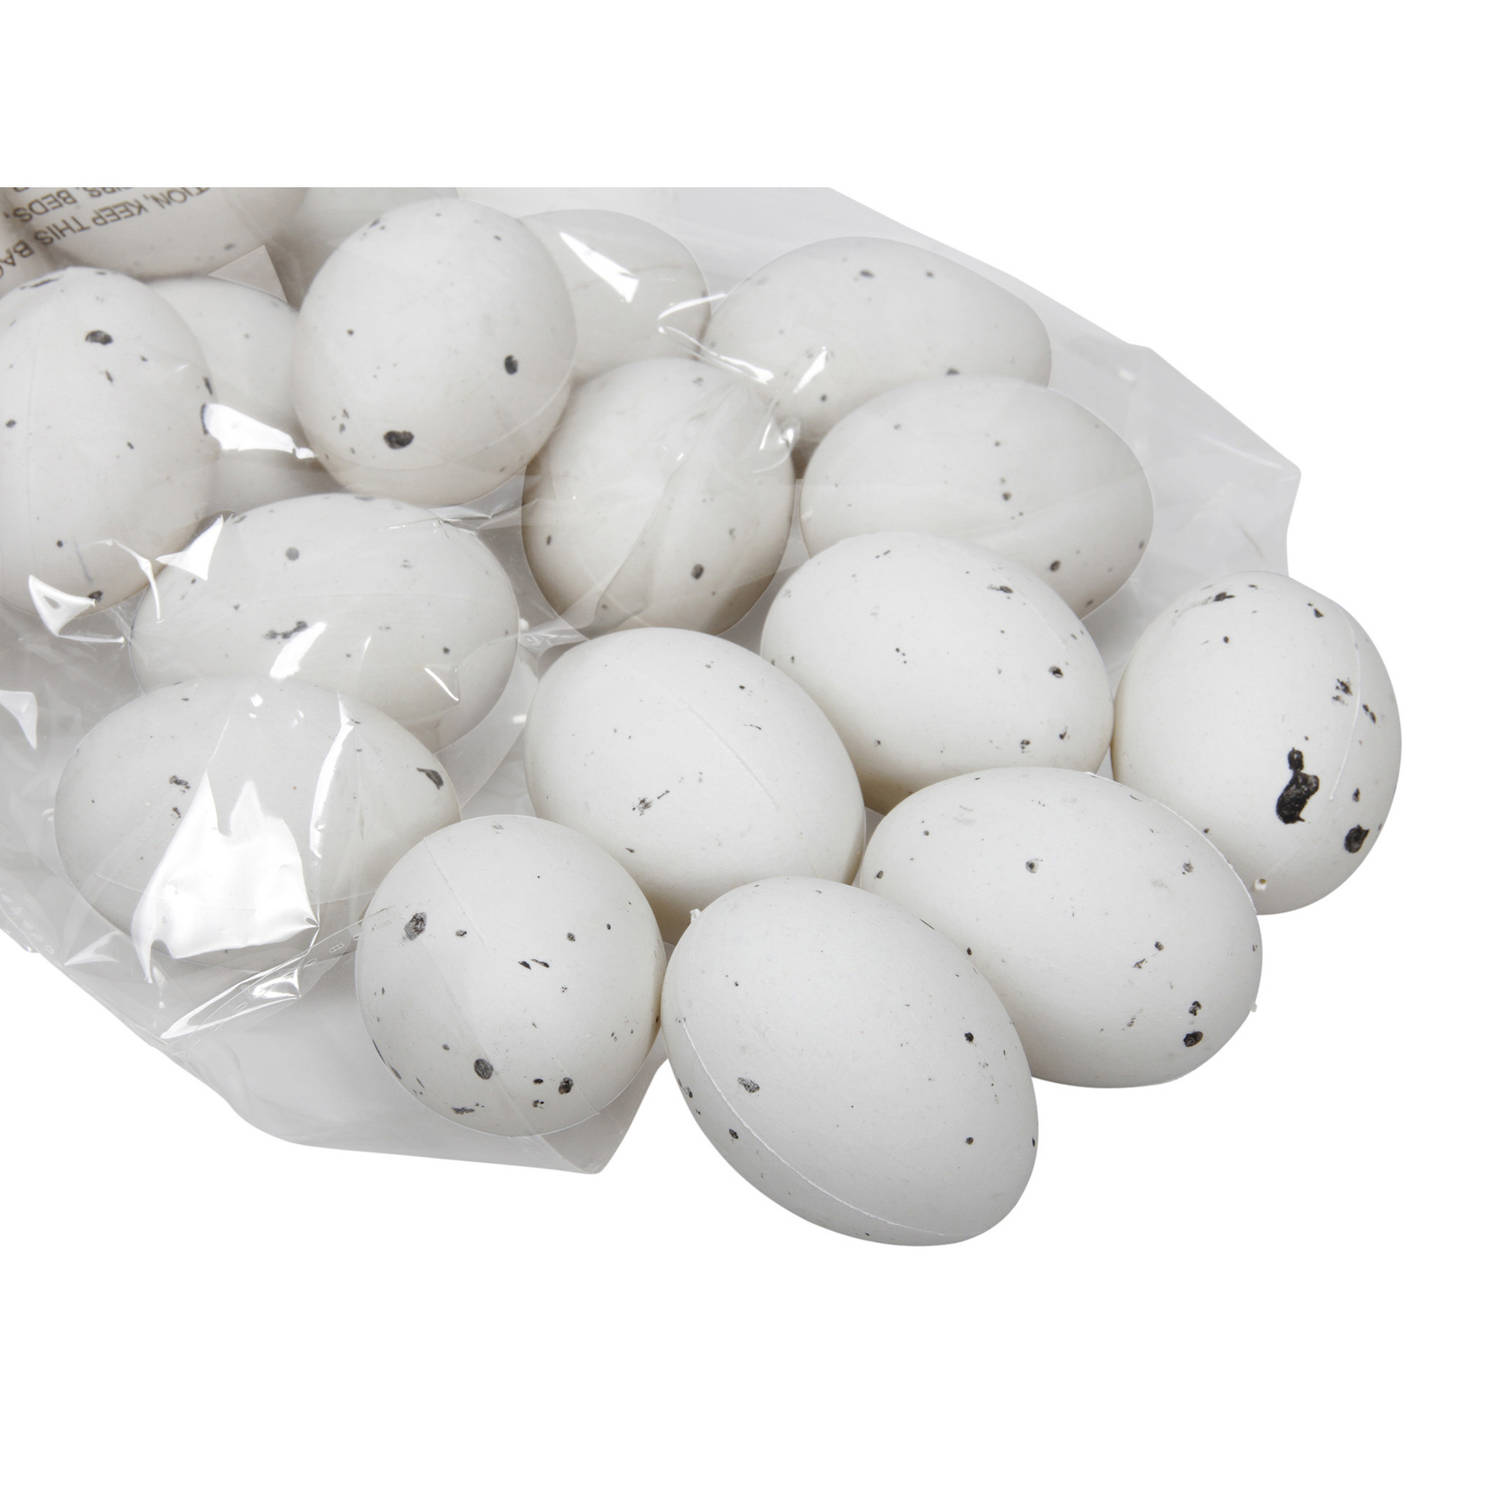 48x Stuks Decoratie Eieren Plastic H6 Cm Wit Feestdecoratievoorwerp